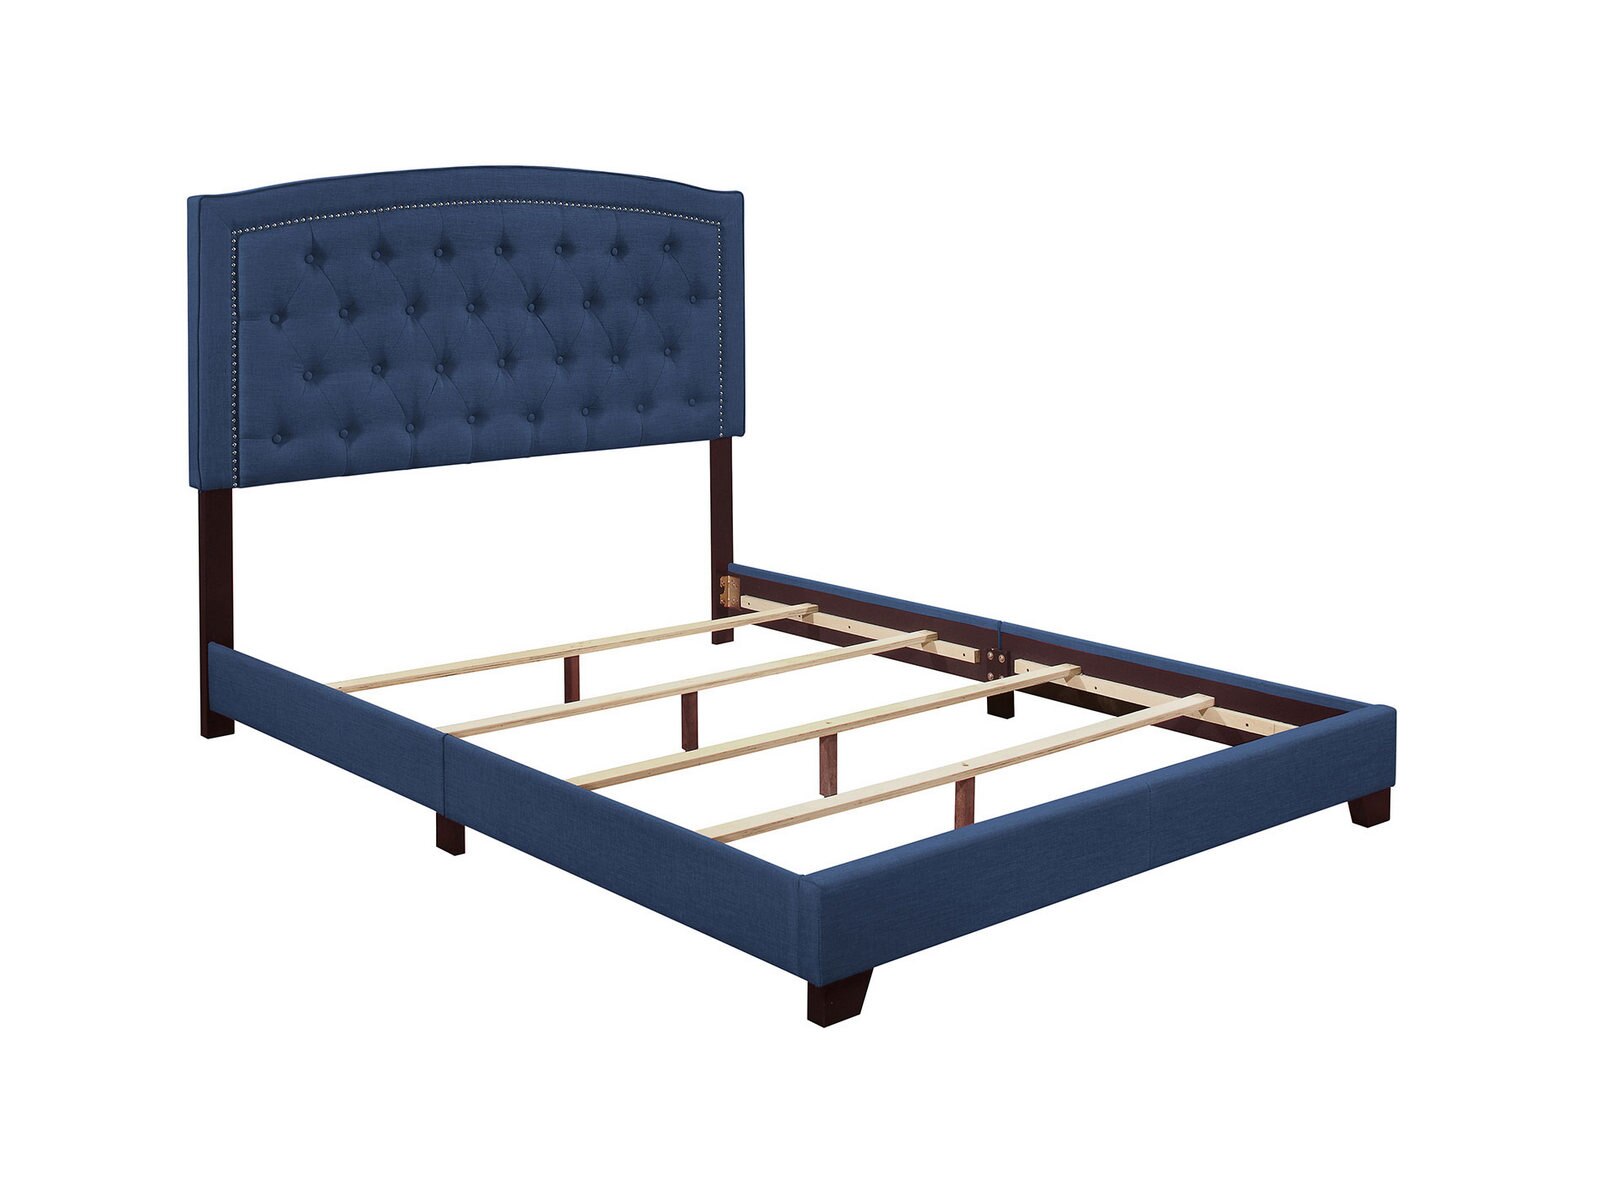 Linden Bed Sets